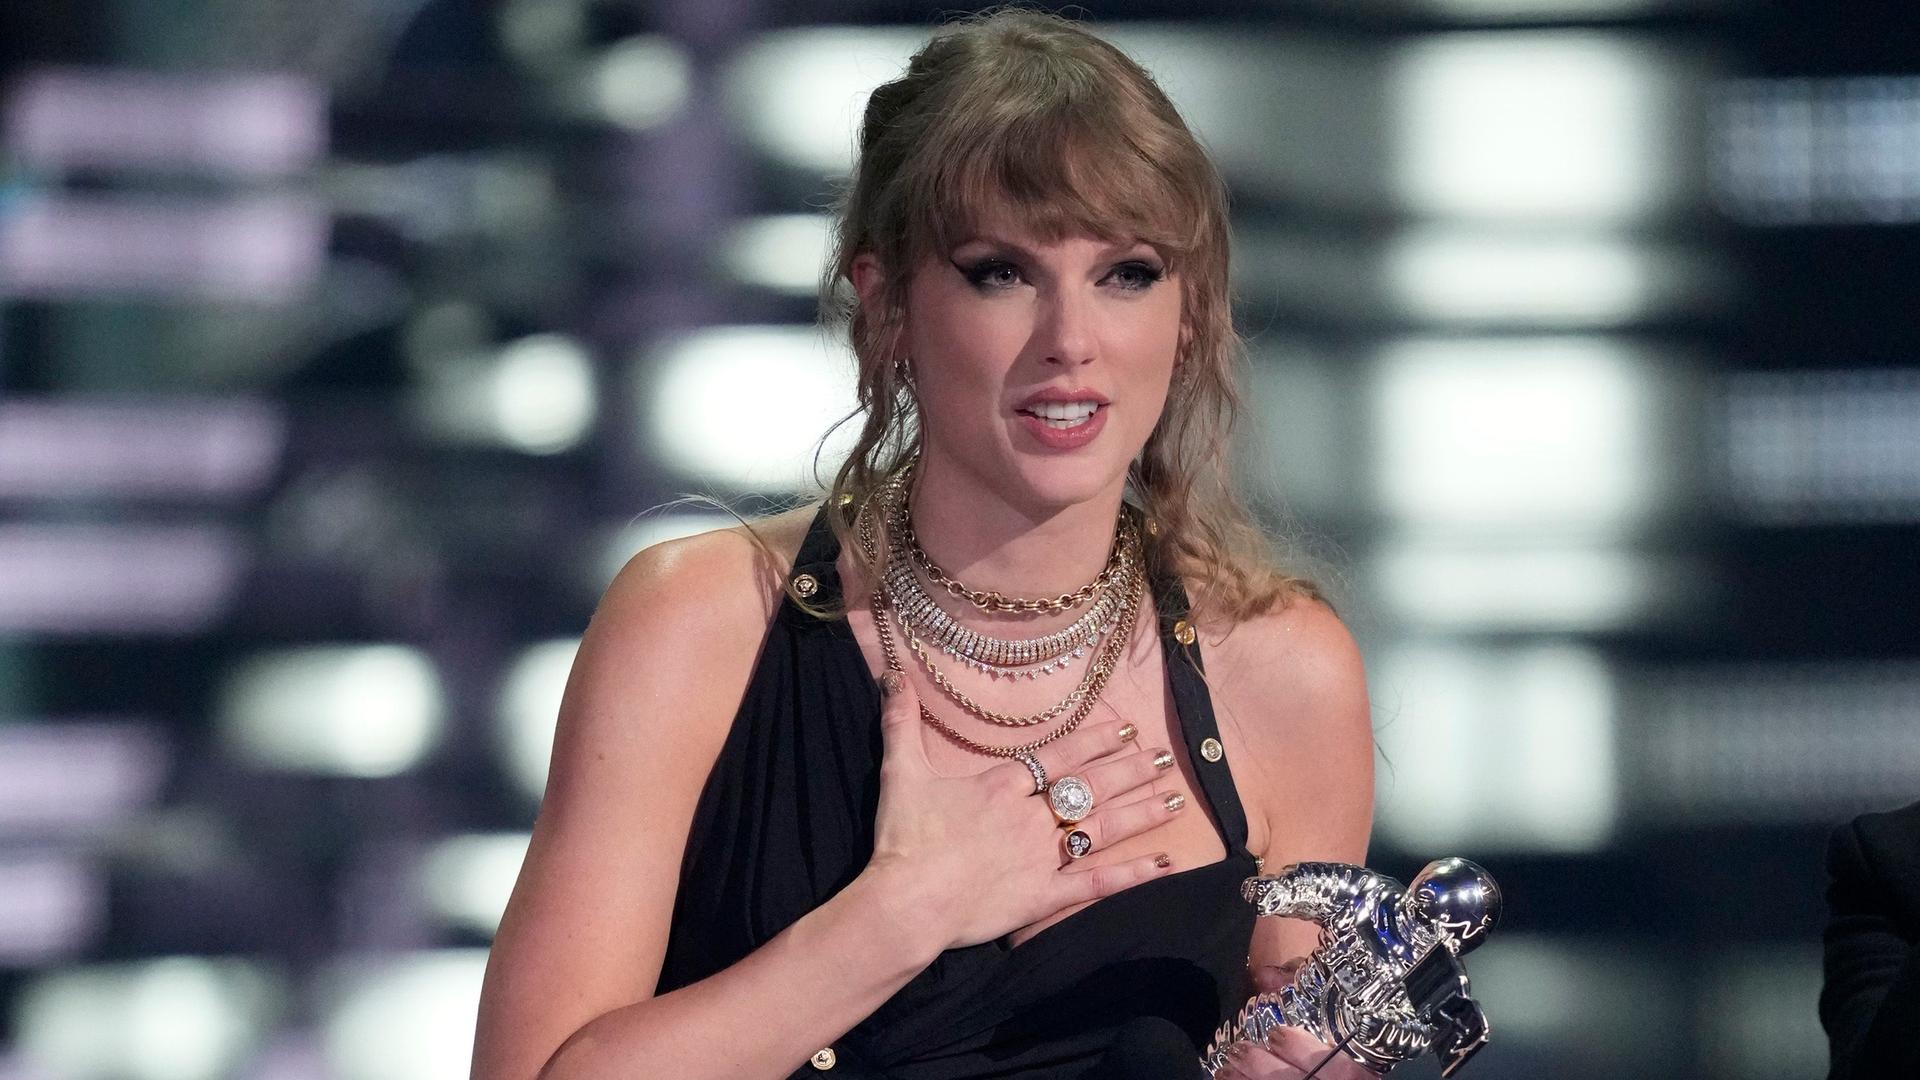 Das Foto zeigt die Sängerin Taylor Swift. Sie hält einen Preis in der Hand.